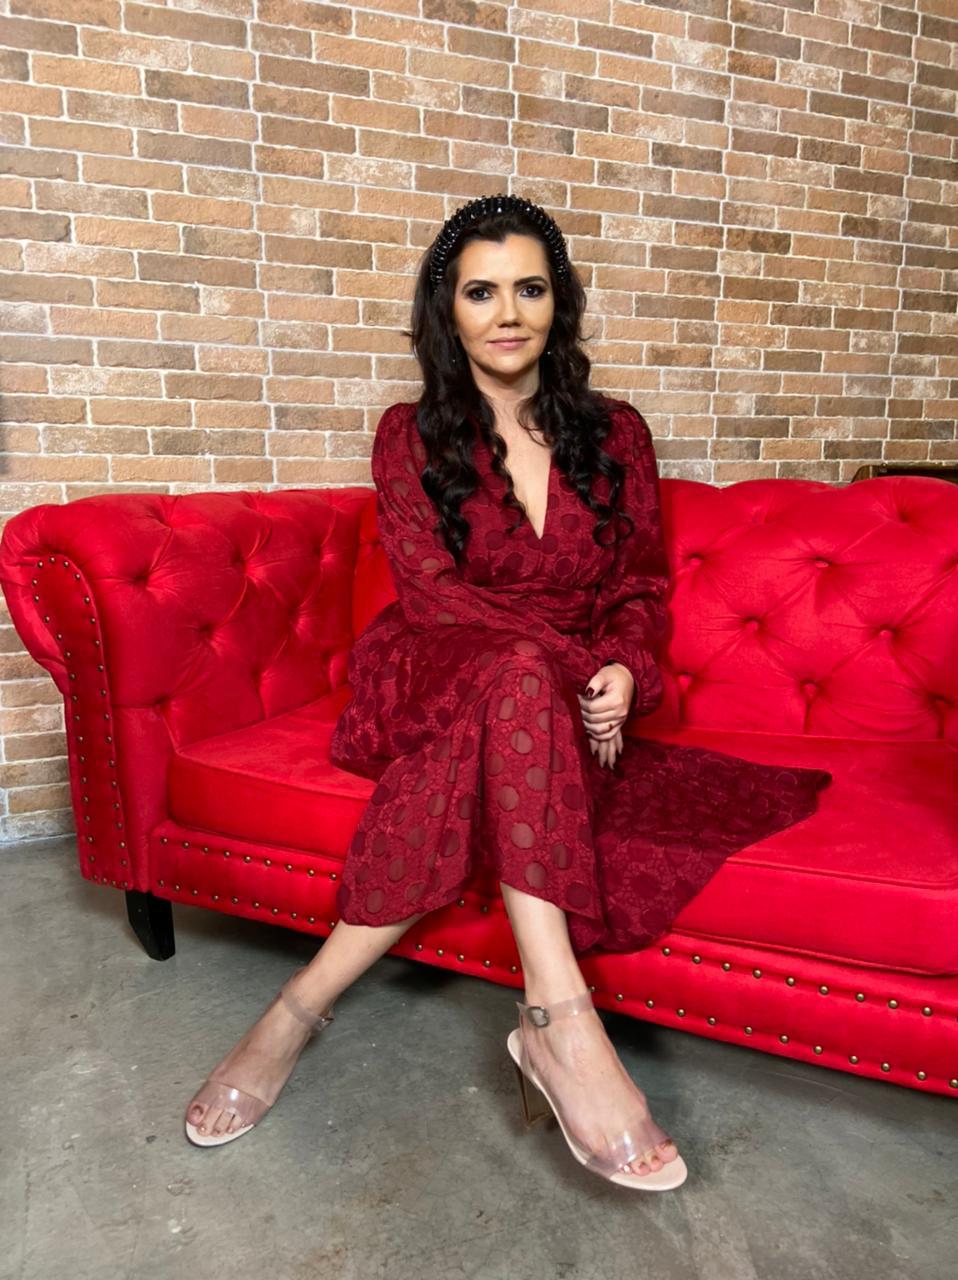 Espiritualista Kelida Marques posa sentada de pernas cruzadas em sofá vermelho. Veste vestido também vermelho e tem cabelos pretos longos.